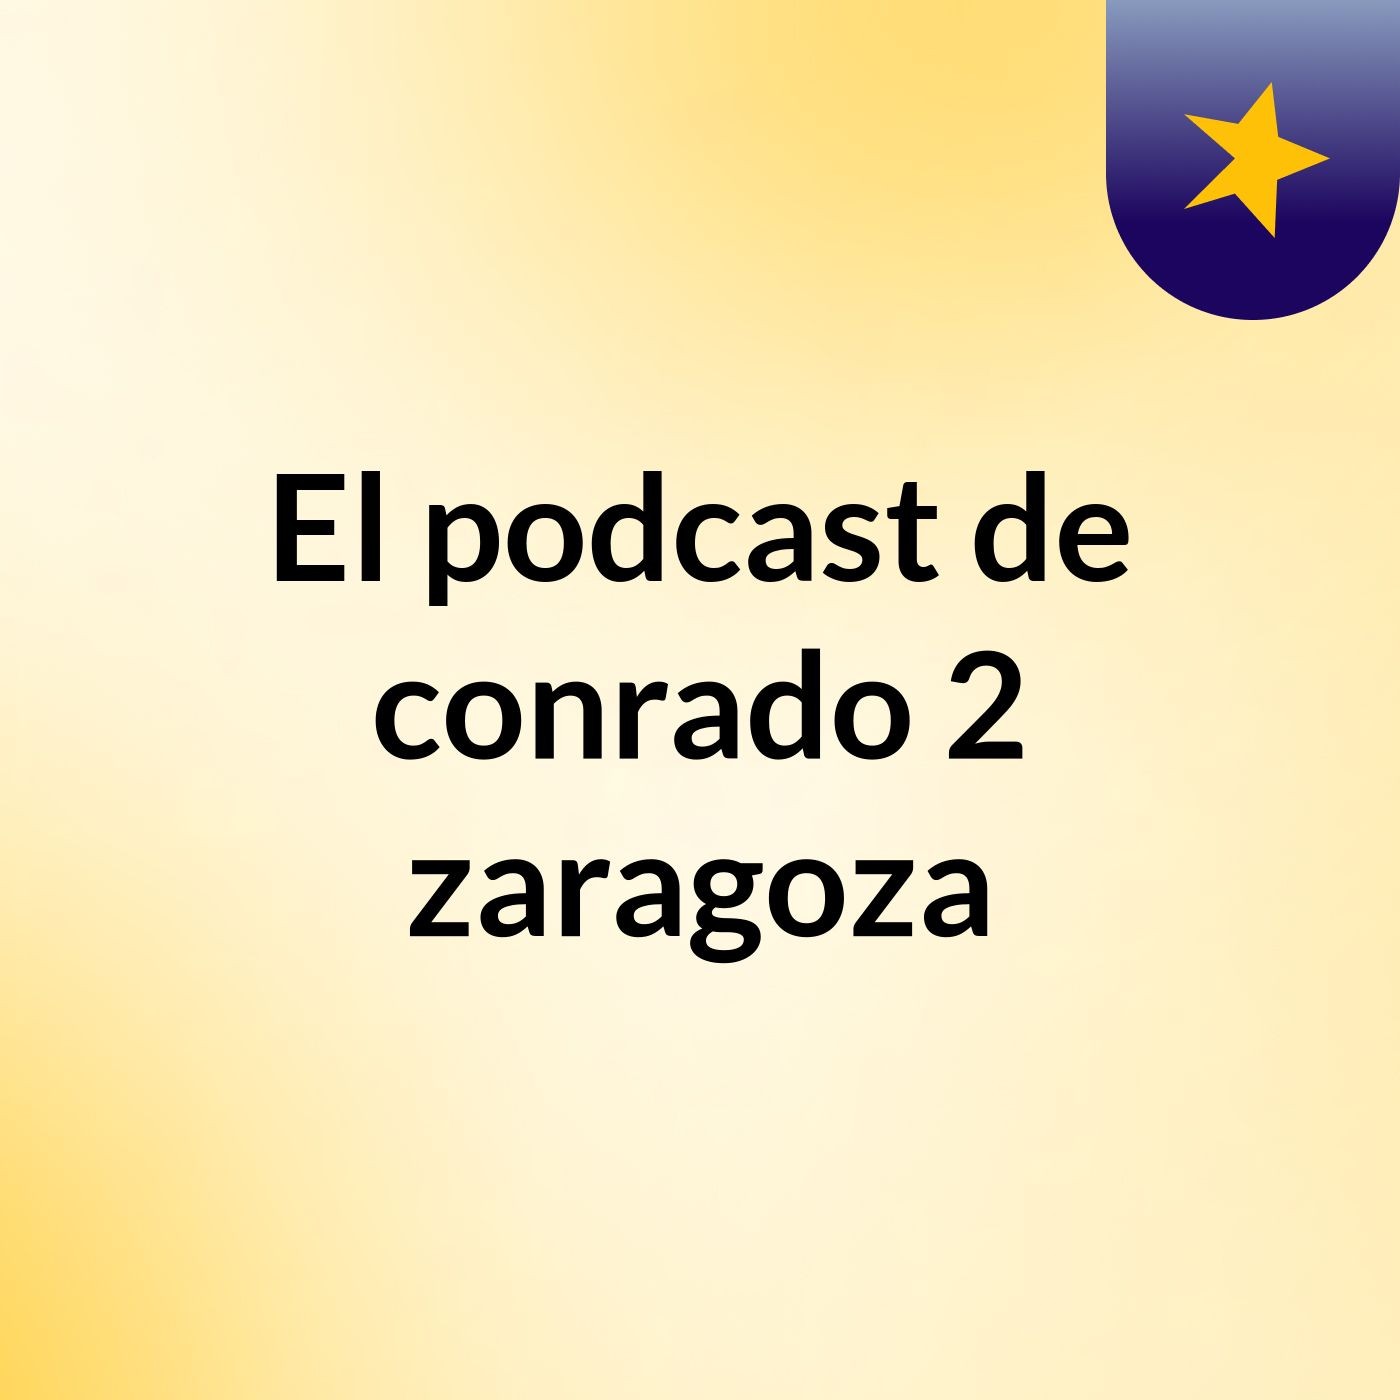 Episodio 10 - El podcast de conrado 2 zaragoza